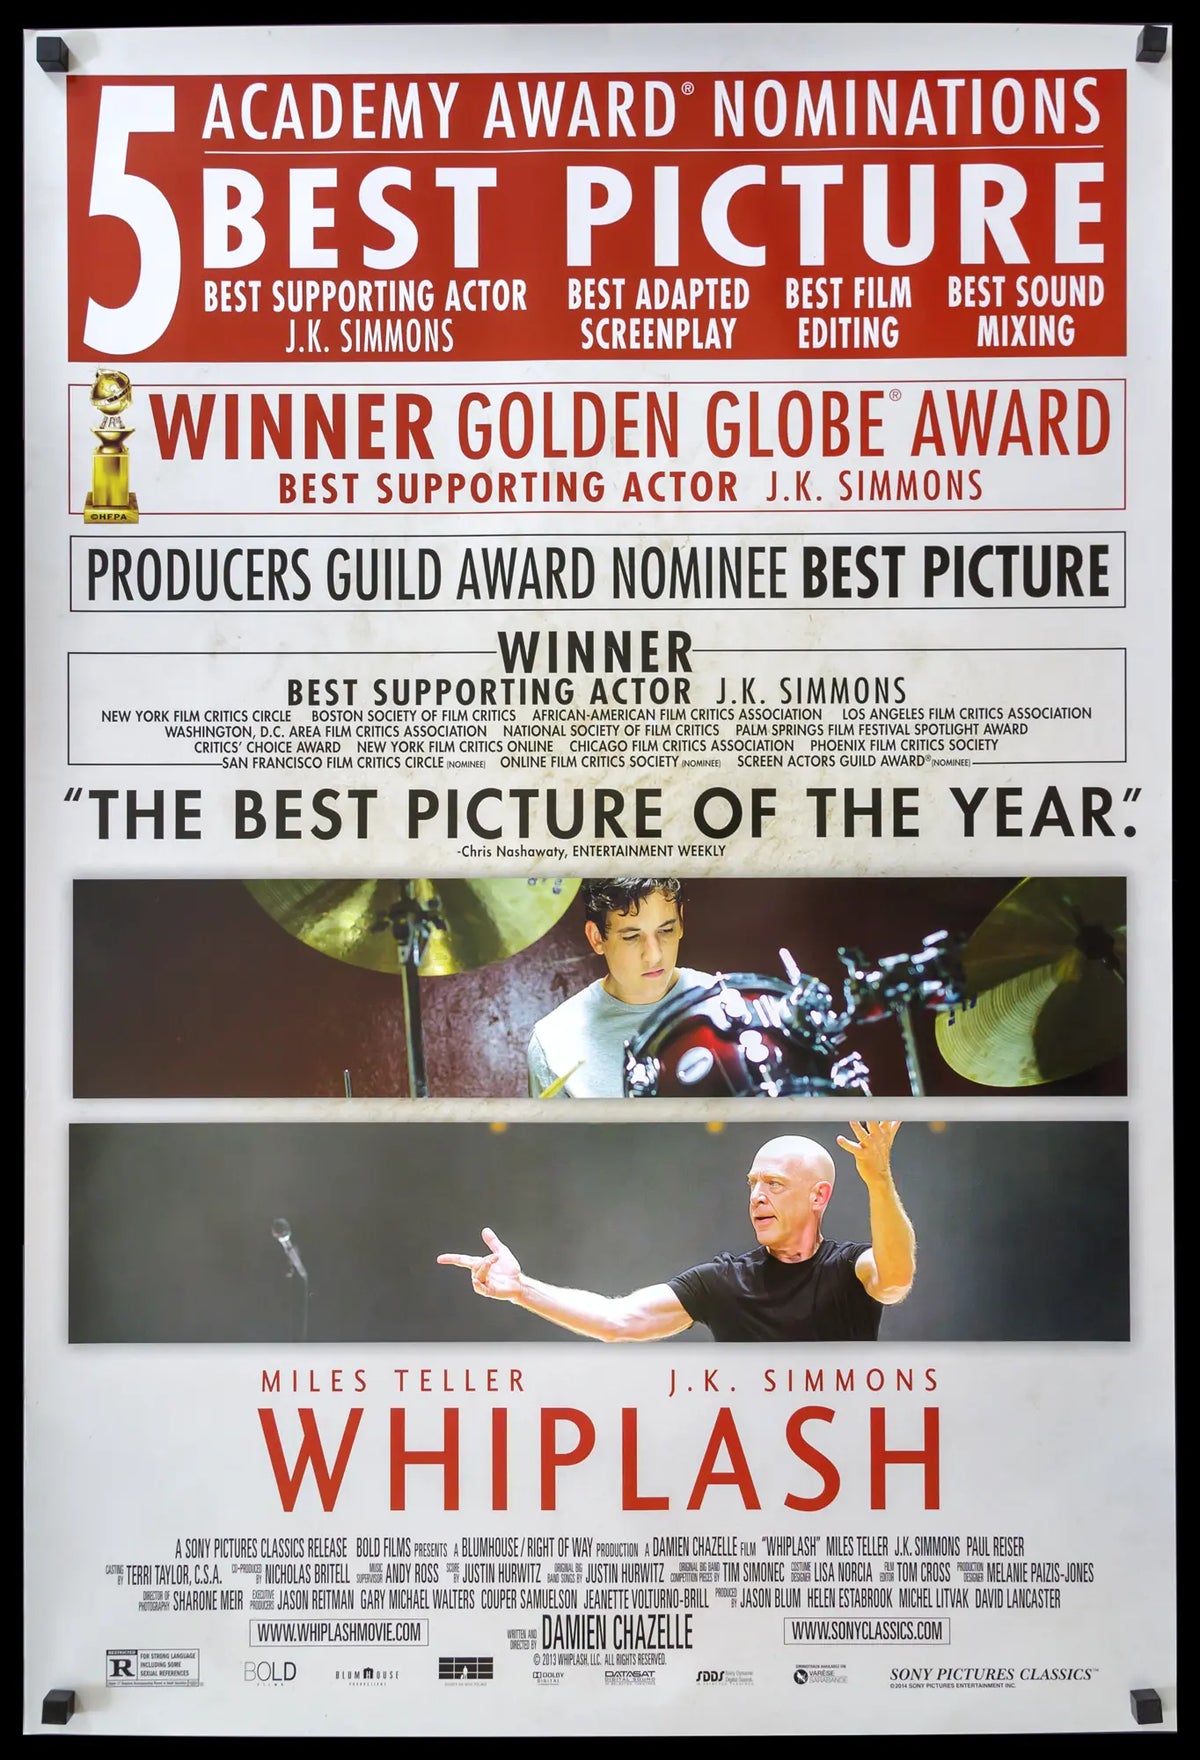 Whiplash (2014) original movie poster for sale at Original Film Art